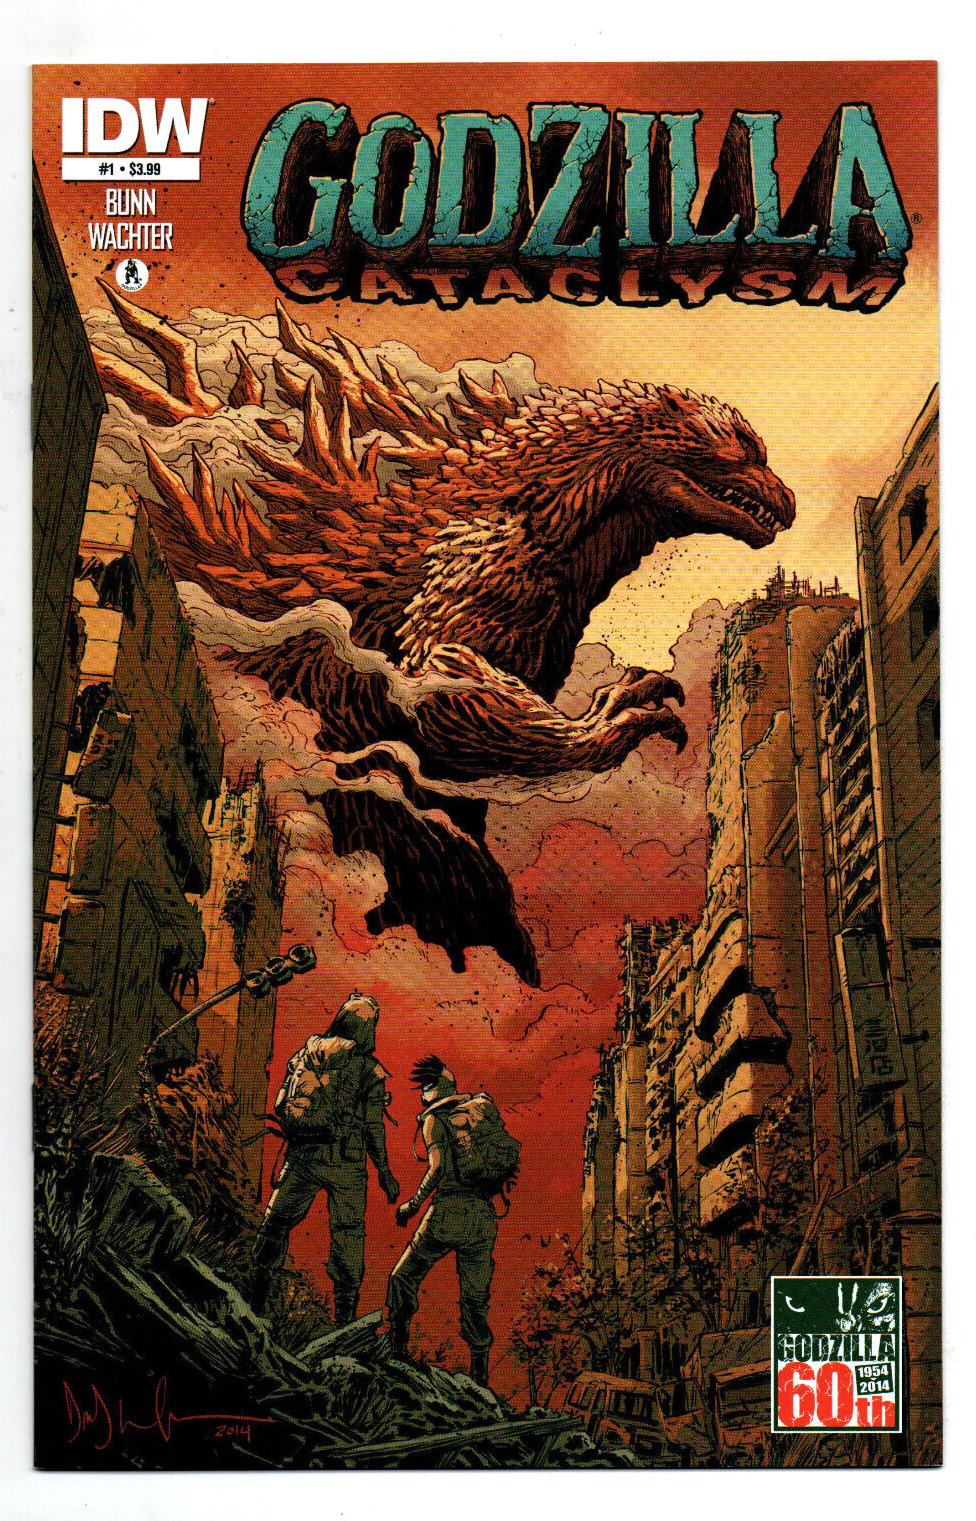 Godzilla Cataclysm #1 - IDW - 2014 - NM